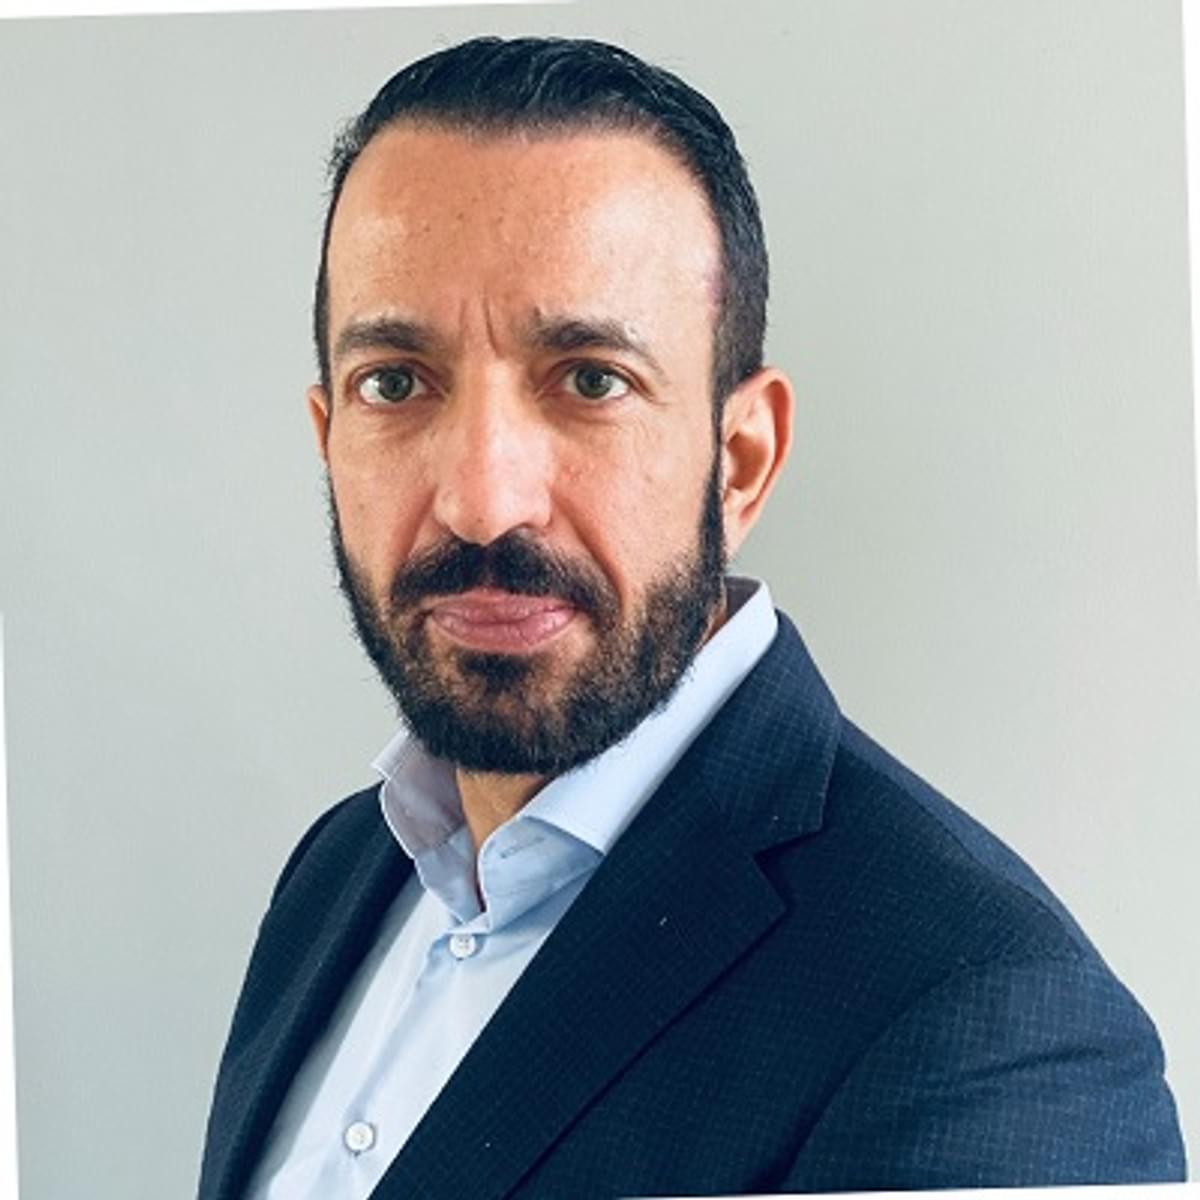 Abdeluheb Choho wordt algemeen directeur RVO image